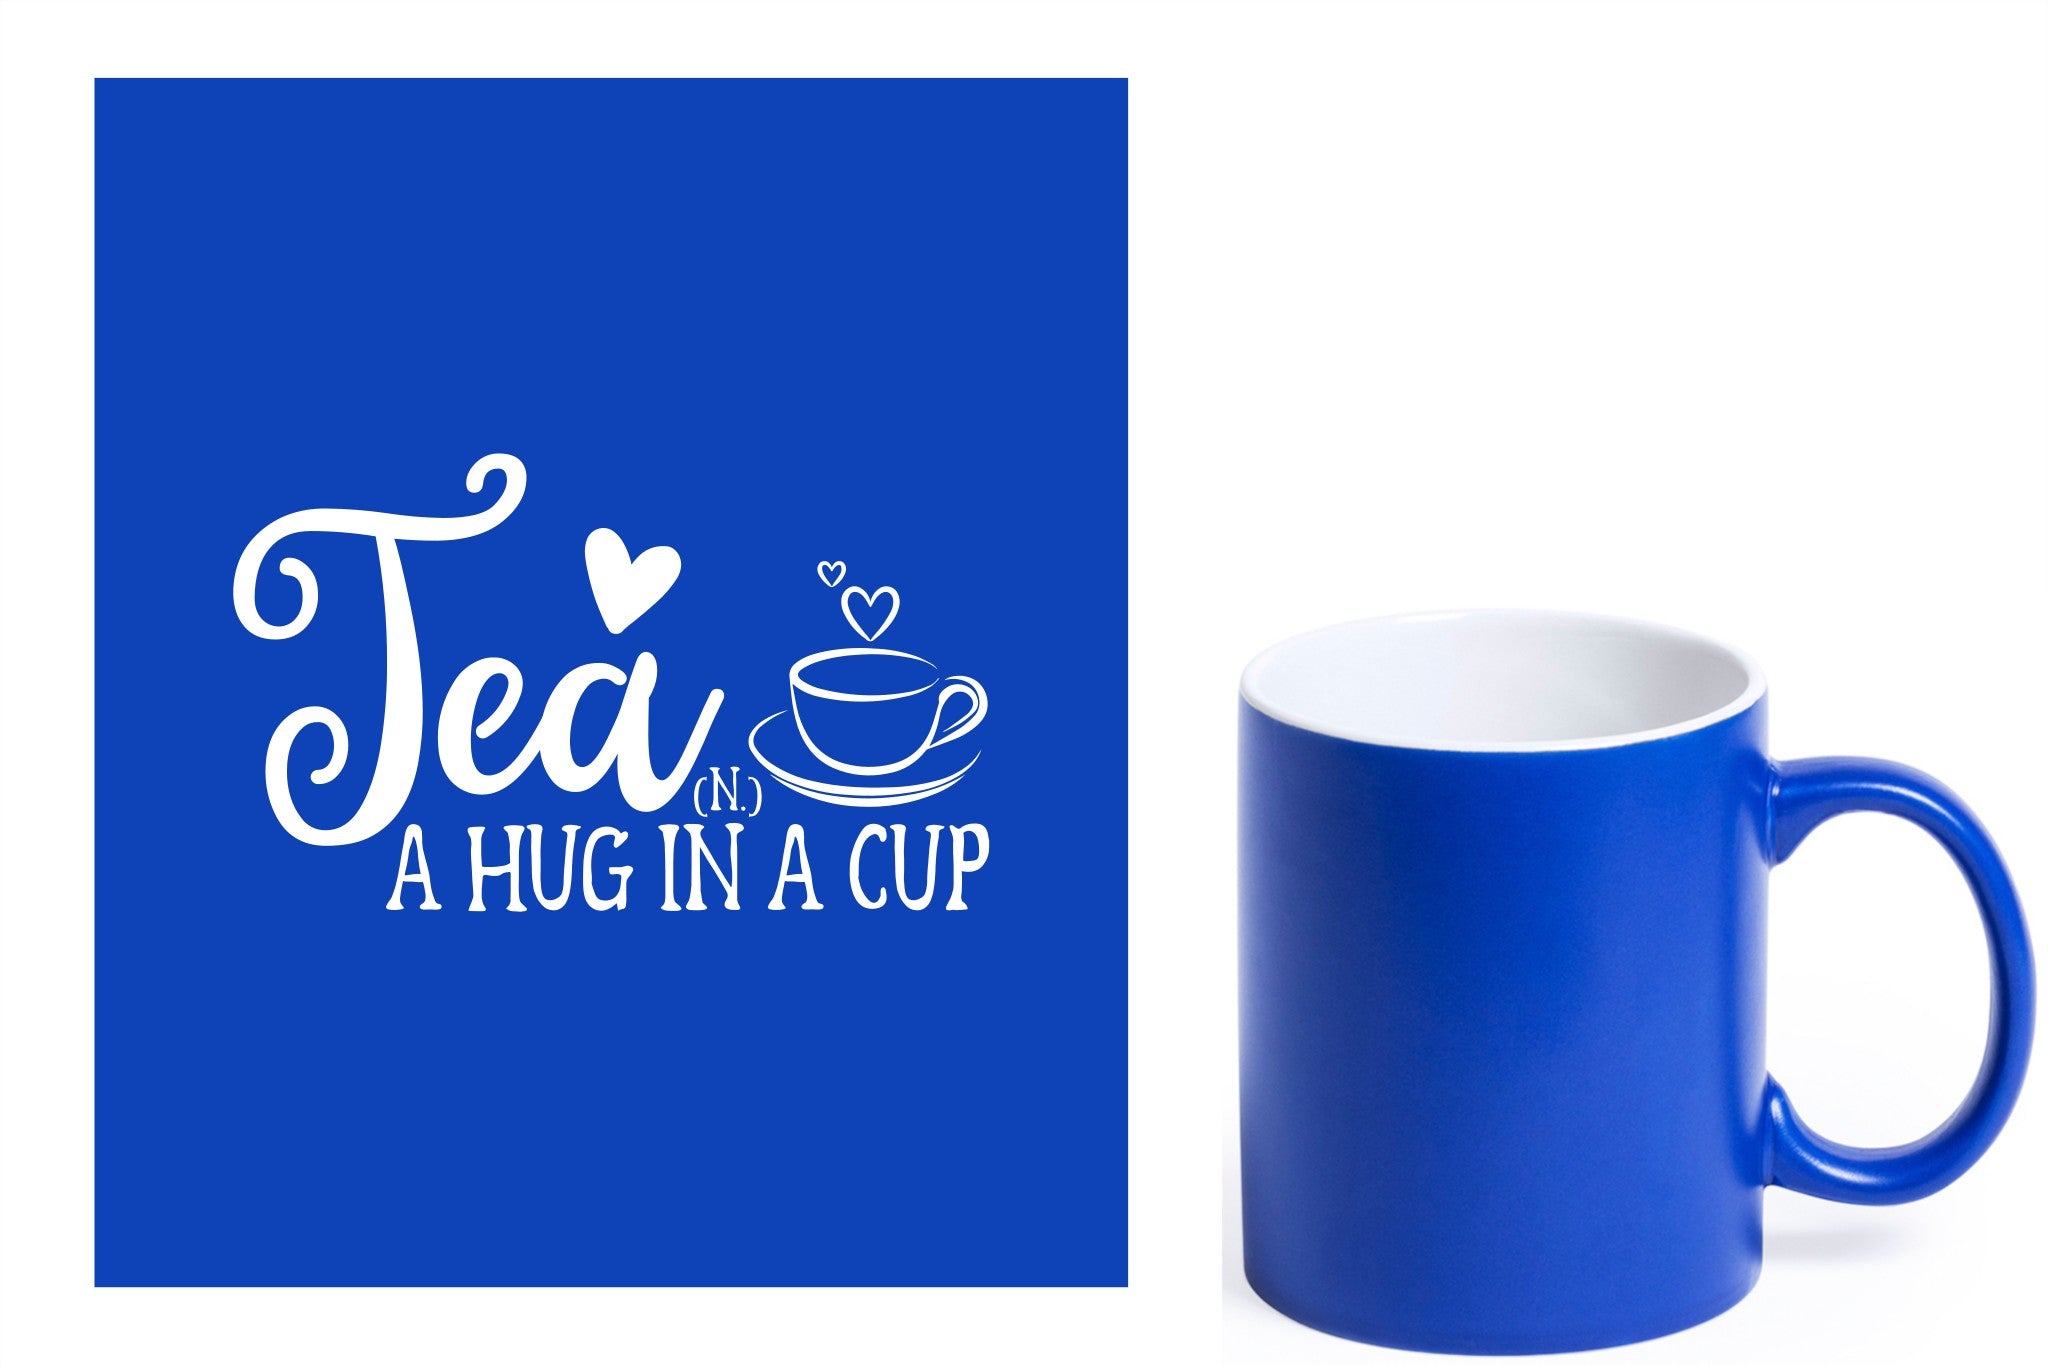 Blauwe keramische mok met witte gravure  'Tea and a hug in a cup'.